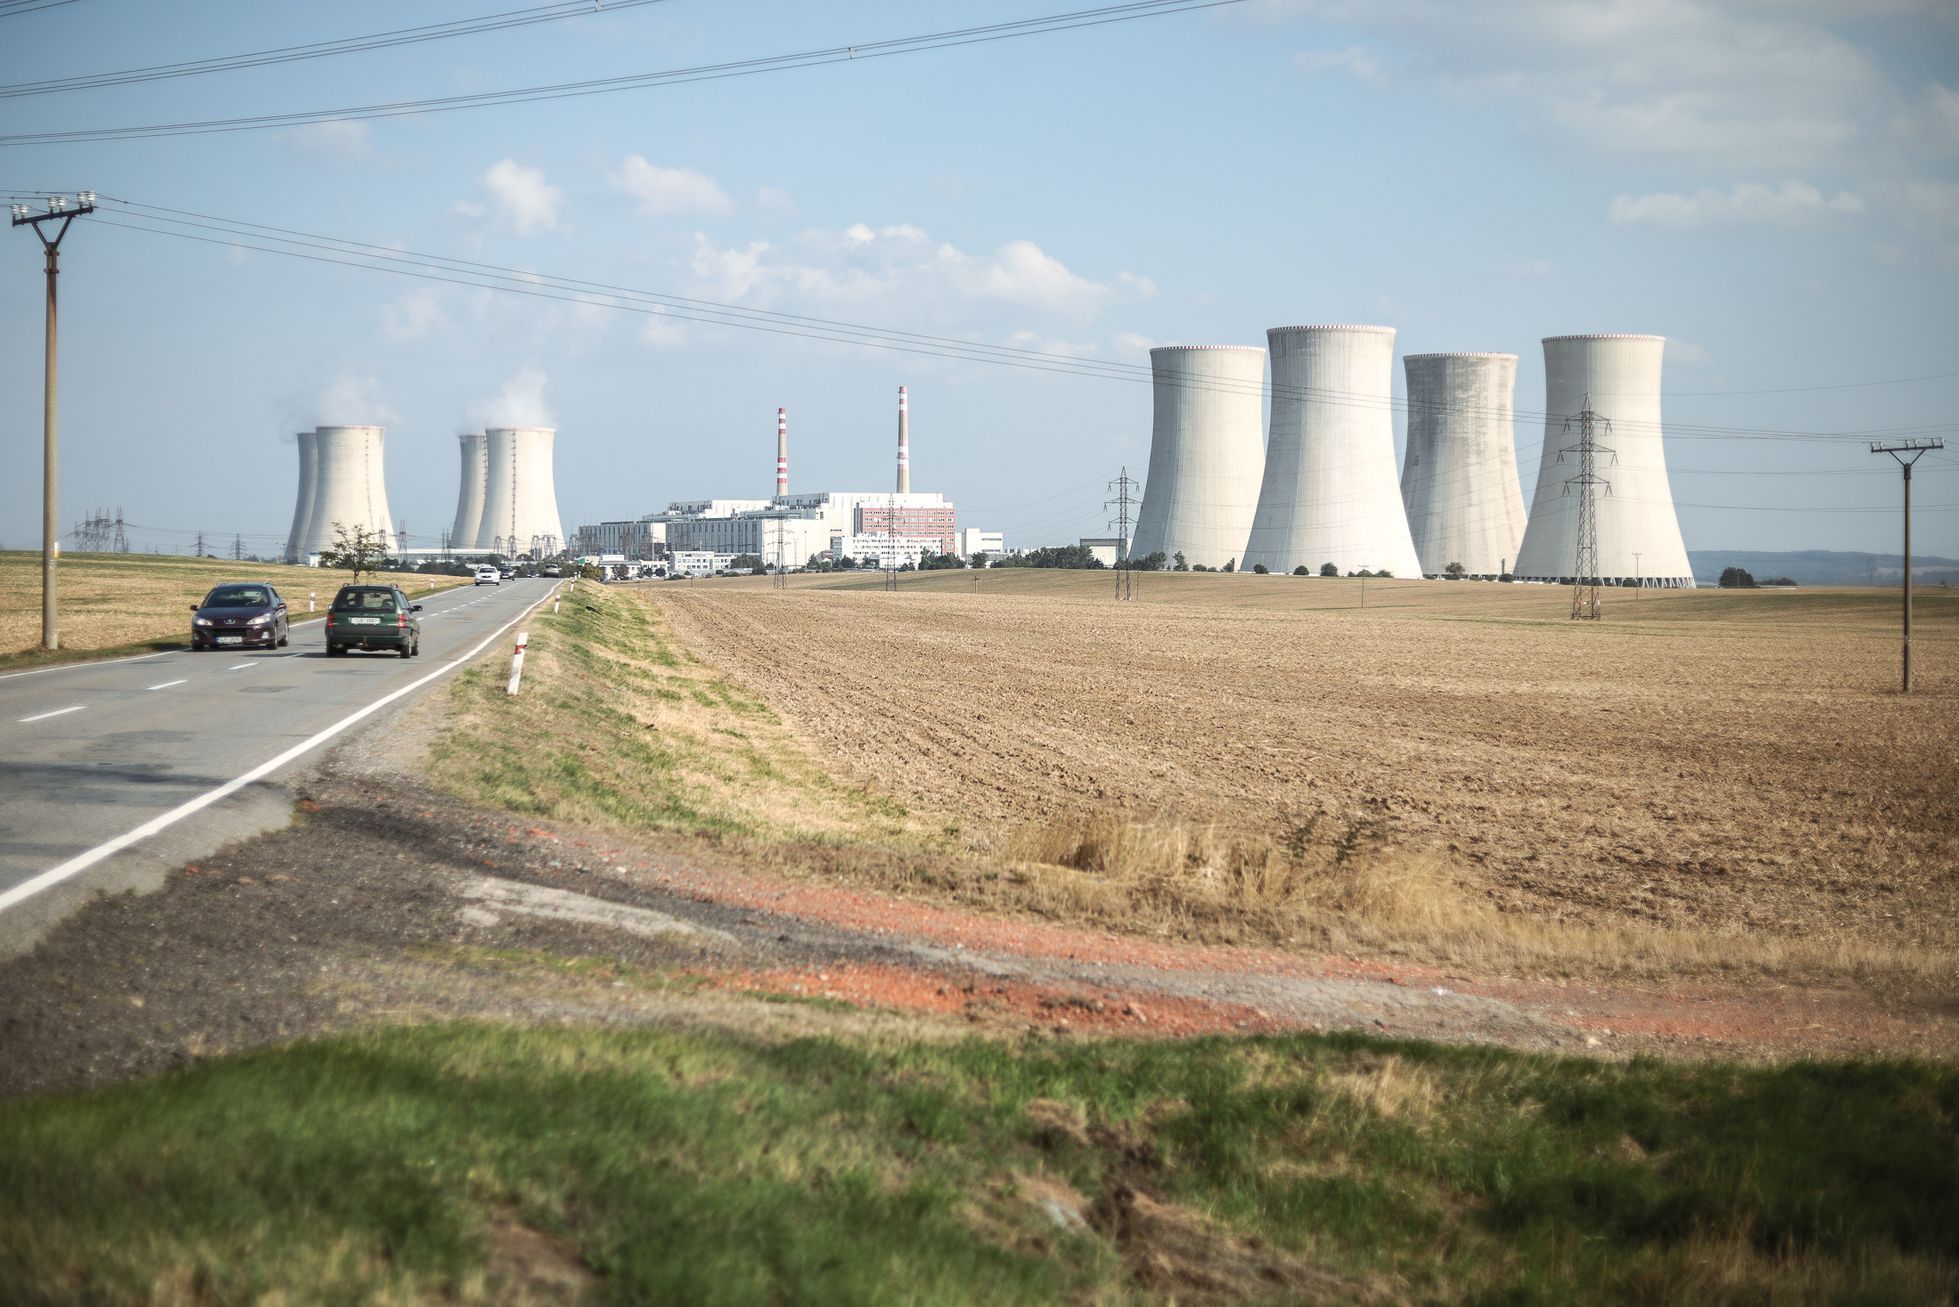 Jaderná elektrárna Dukovany, chladící věž, reaktor, strojovna, regulační tyče, radioaktivita, dozimetr